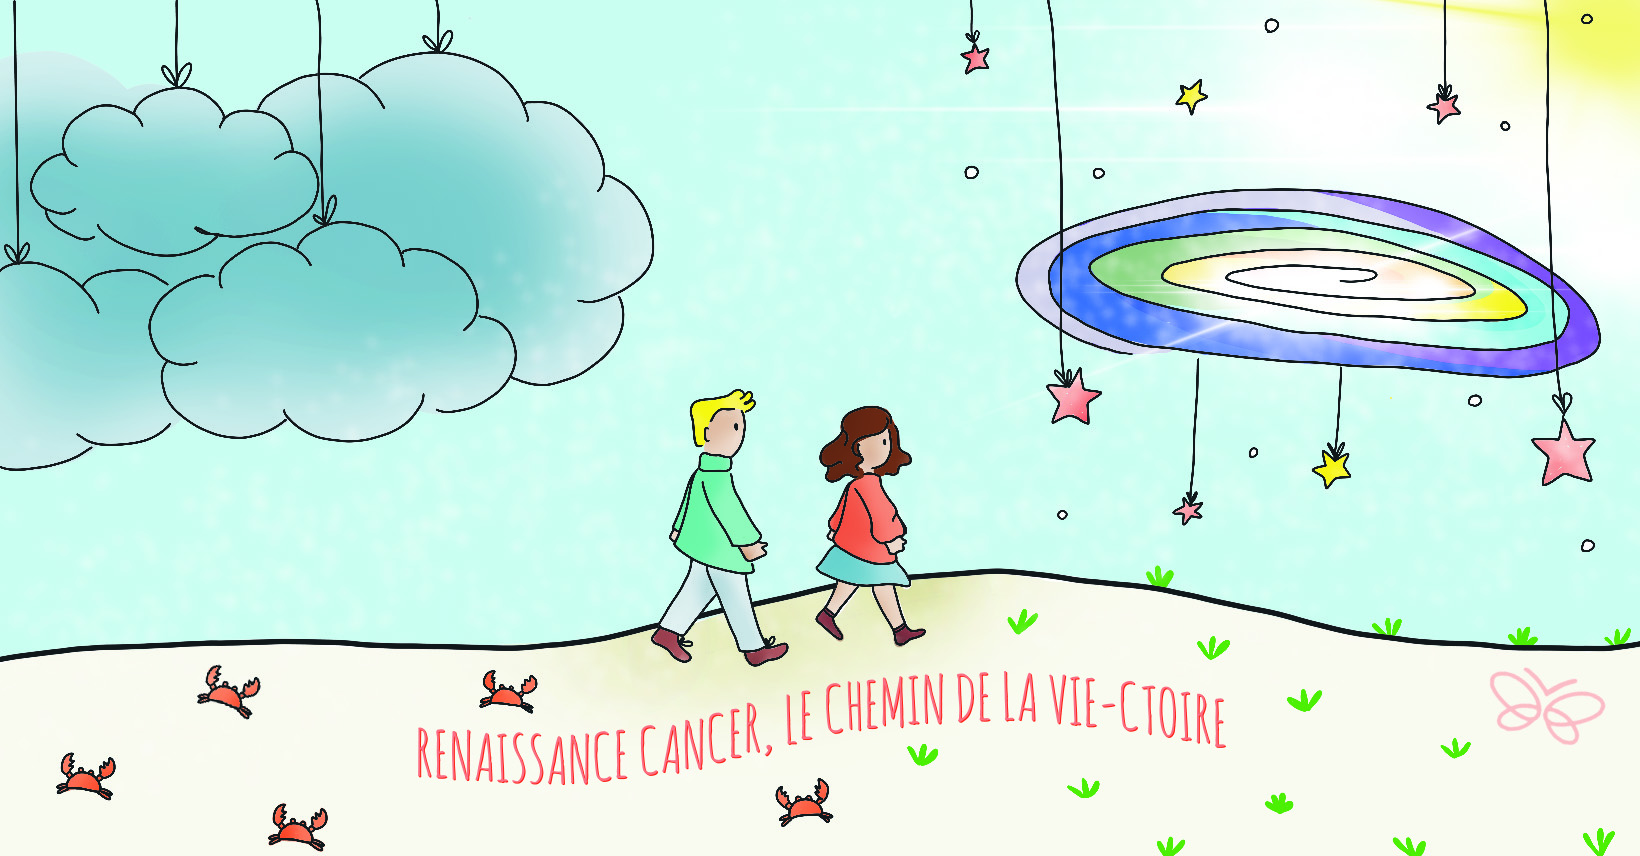 Renaissance Cancer : le chemin de la Vie-ctoire